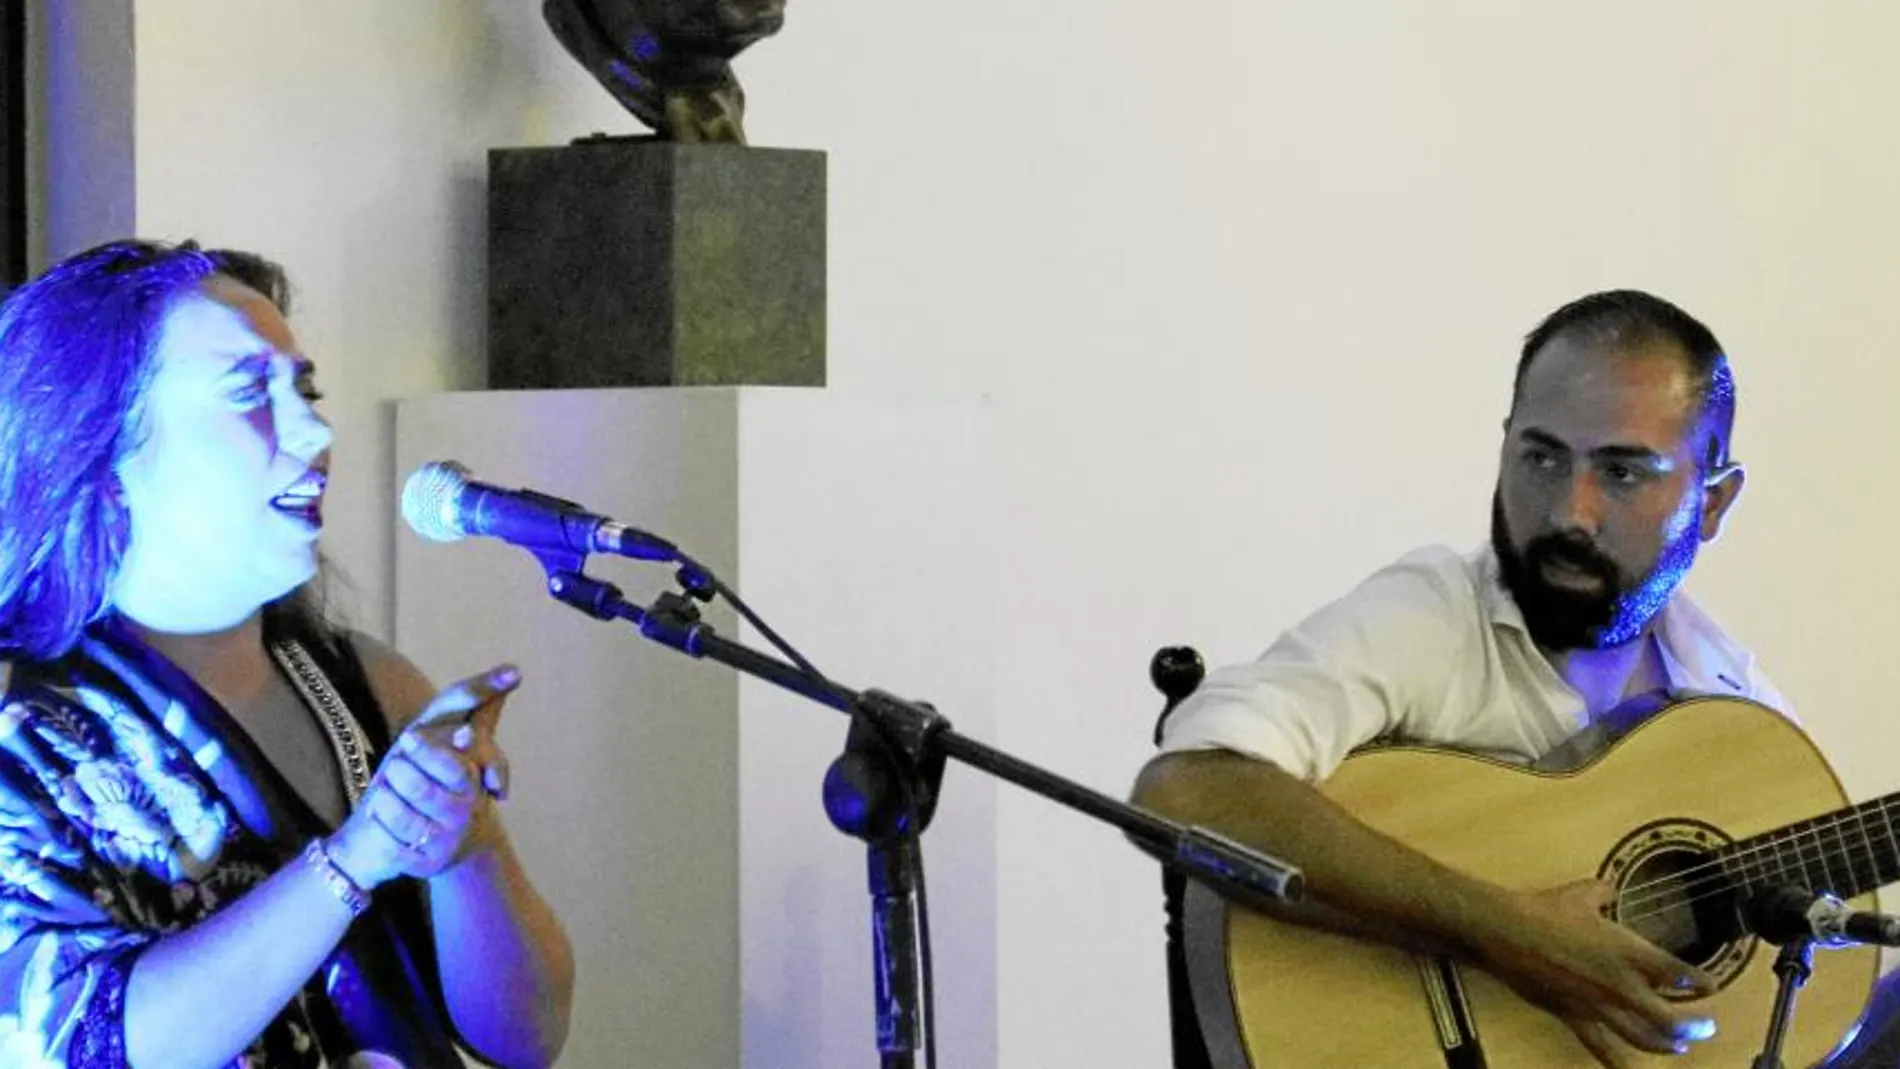 El festival arrancó con la actuación de María Terremoto, al cante, y Nono Jero, a la guitarra